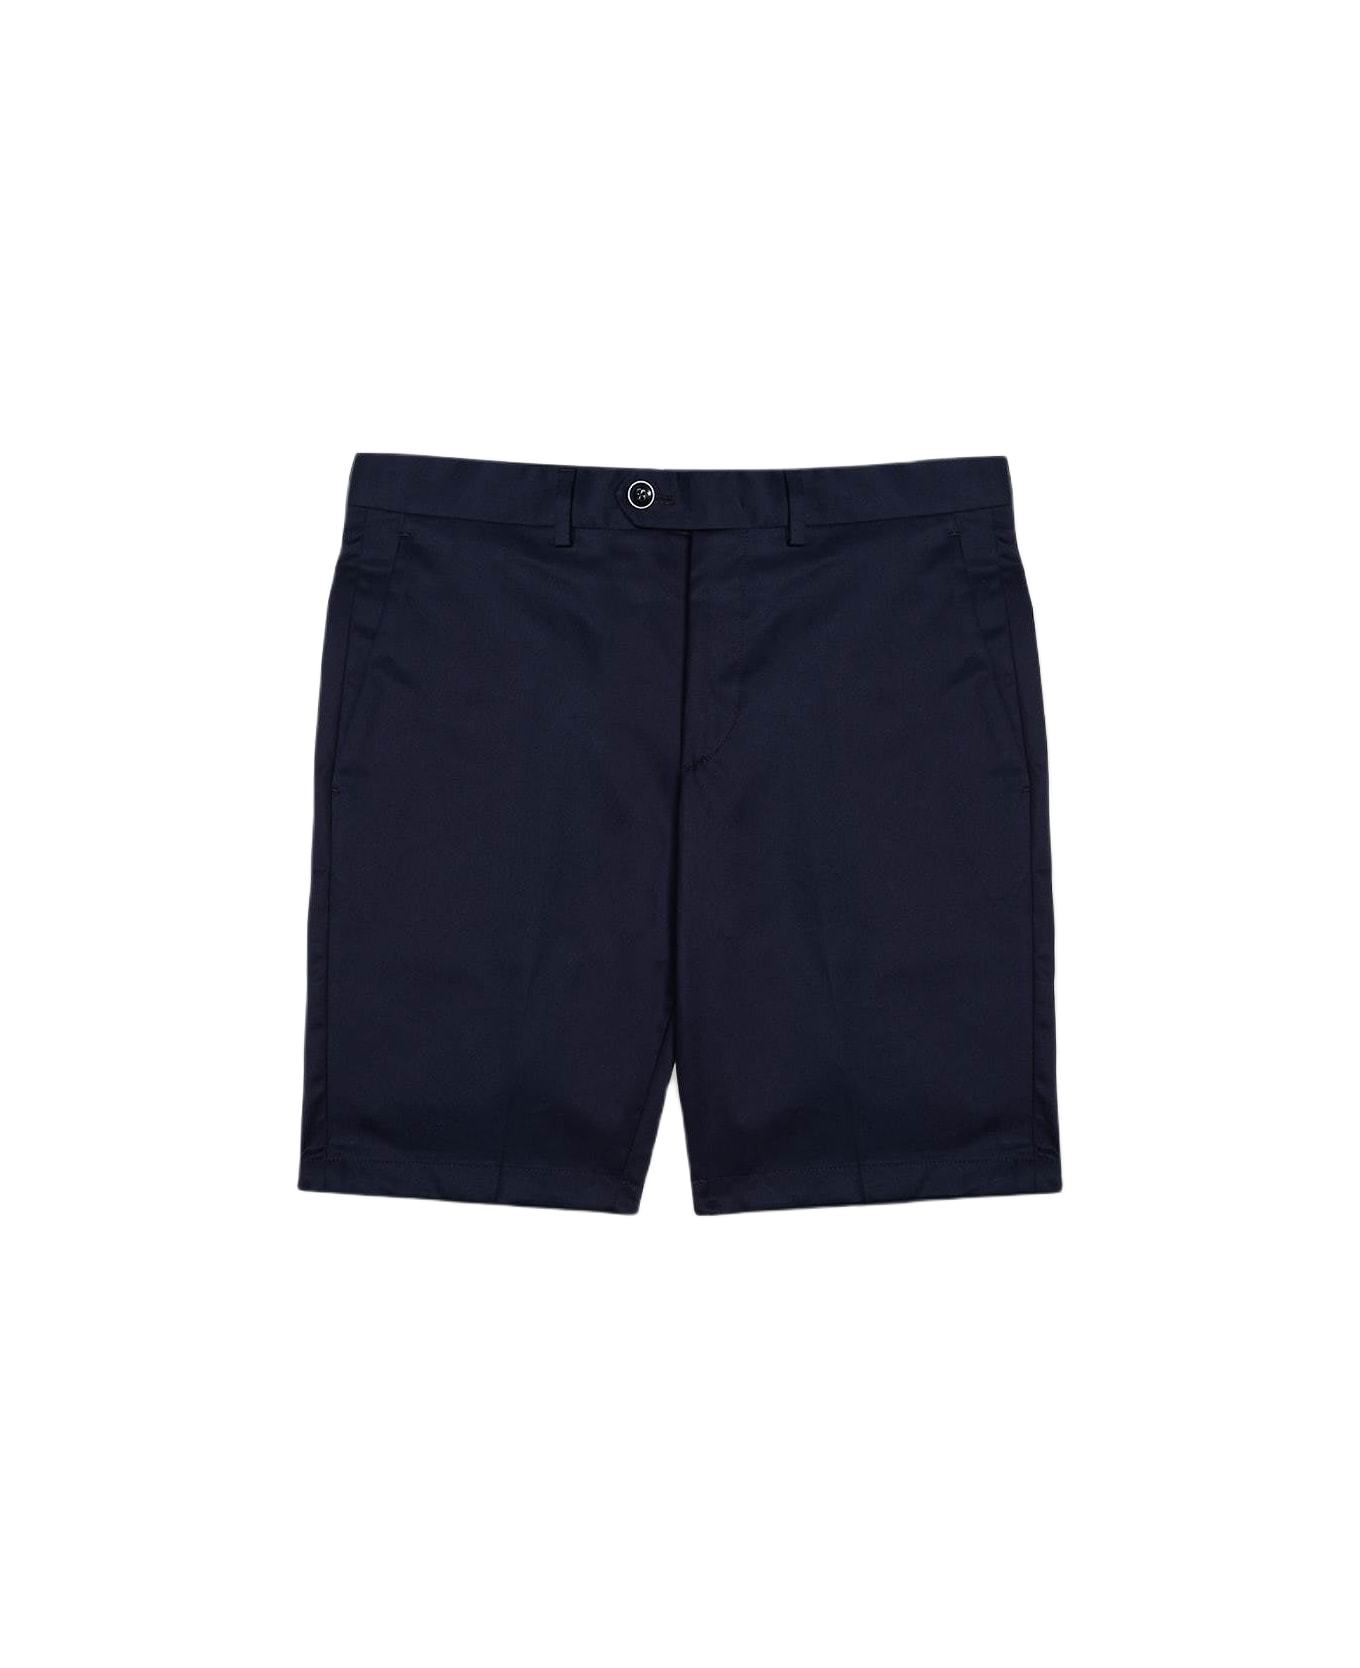 Larusmiani Bermuda Short 'poltu Quatu' Shorts - Blue